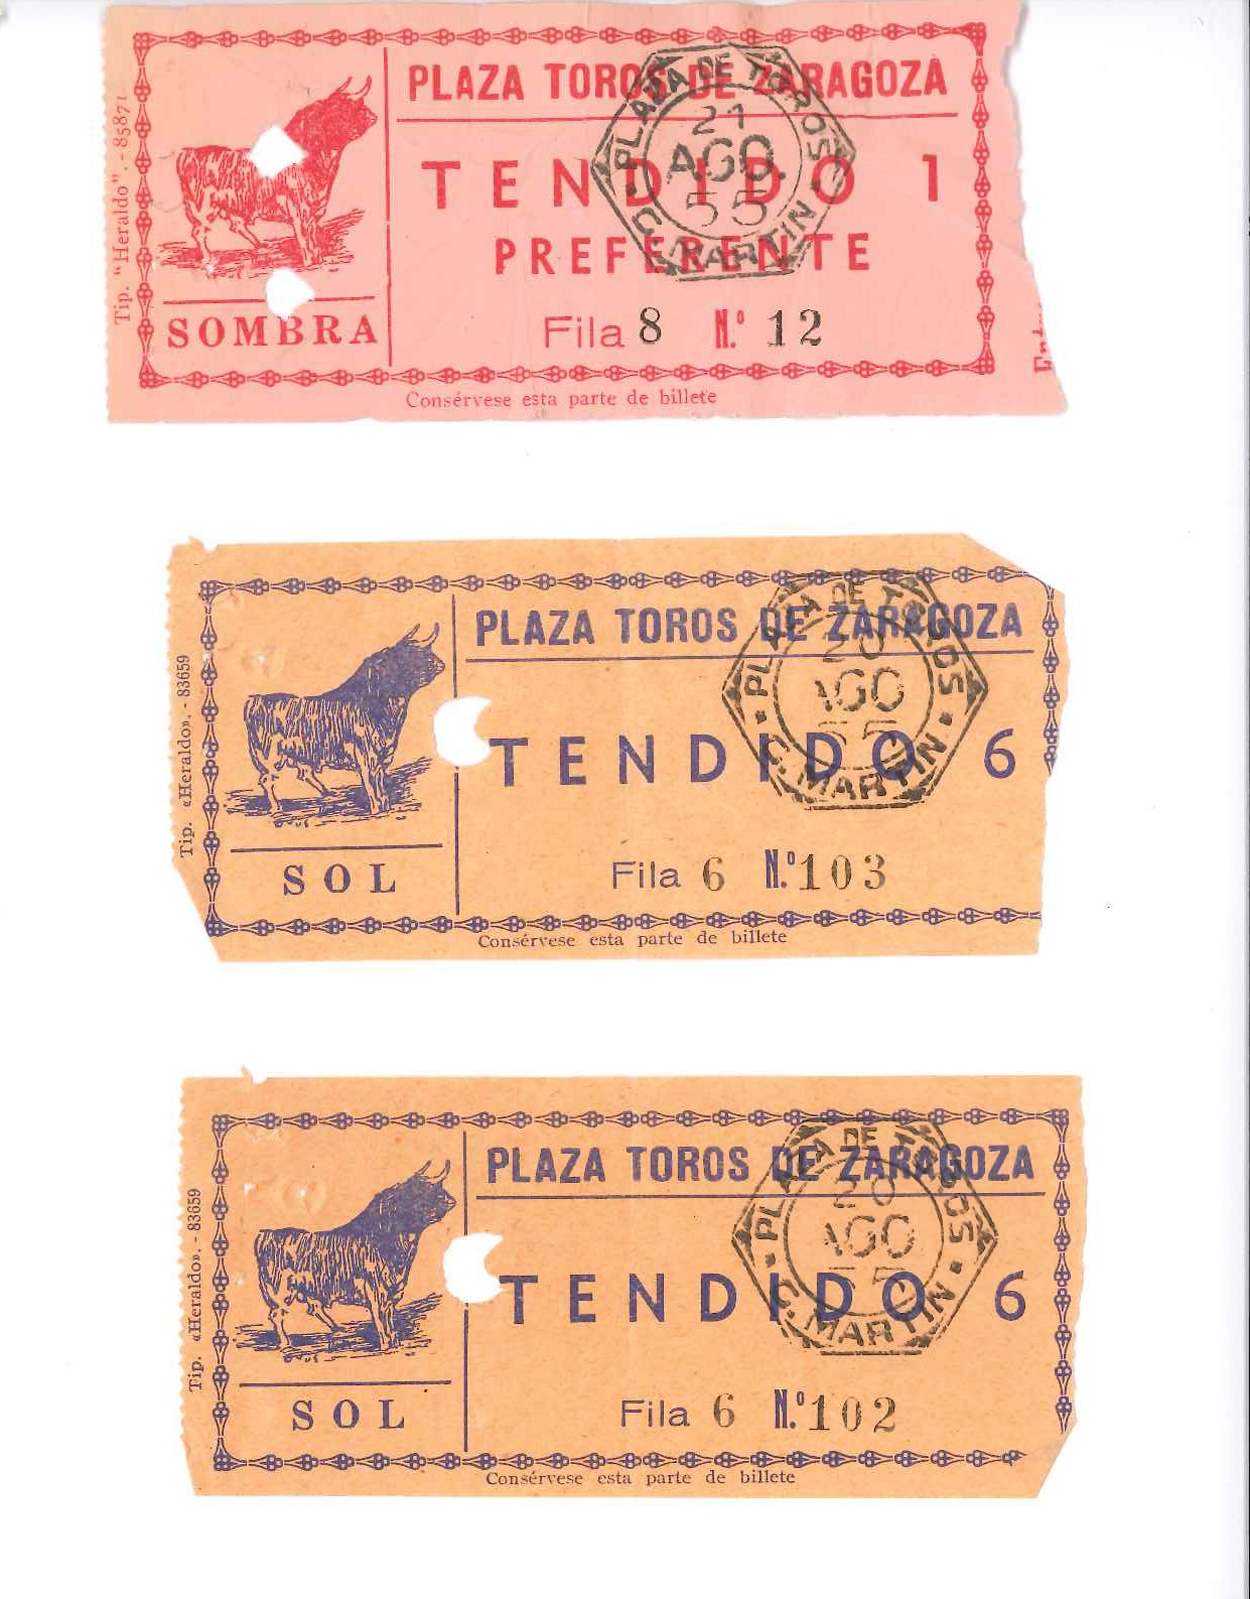 Entradas usadas en la corrida de toros del 20 de agosto en Zaragoza.